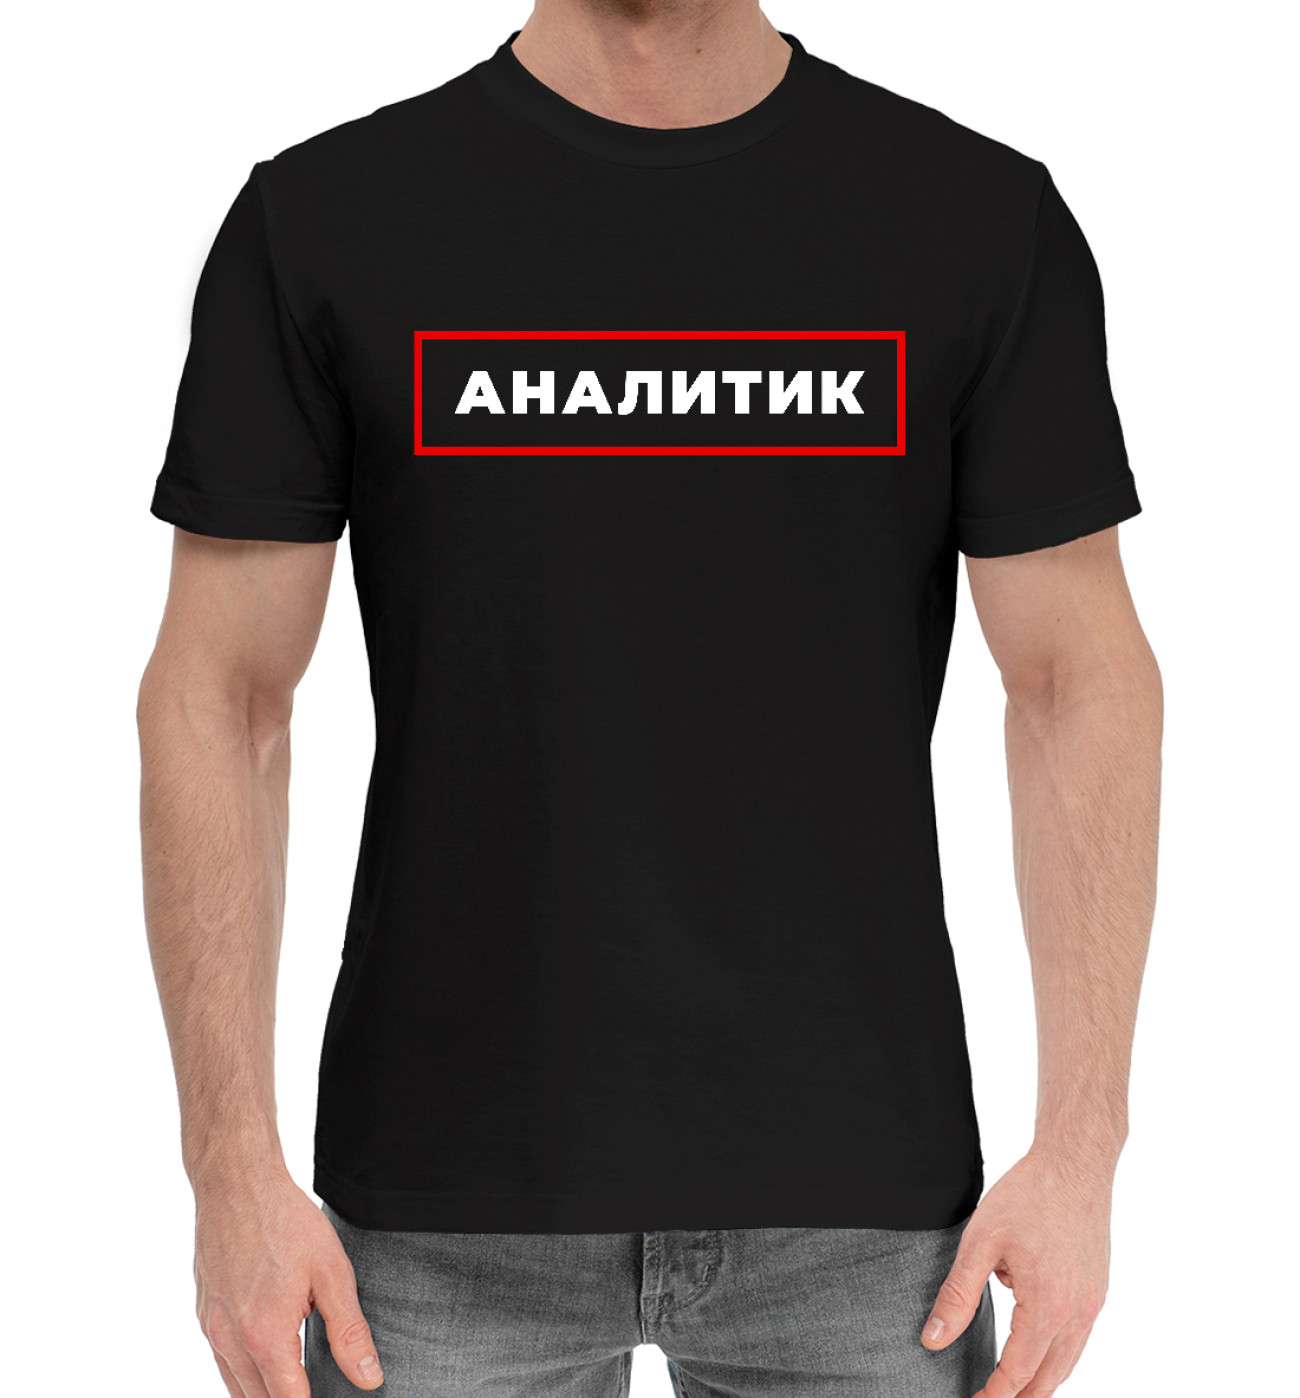 Мужская Хлопковая футболка Аналитик - в красной рамке, артикул: NAL-822323-hfu-2